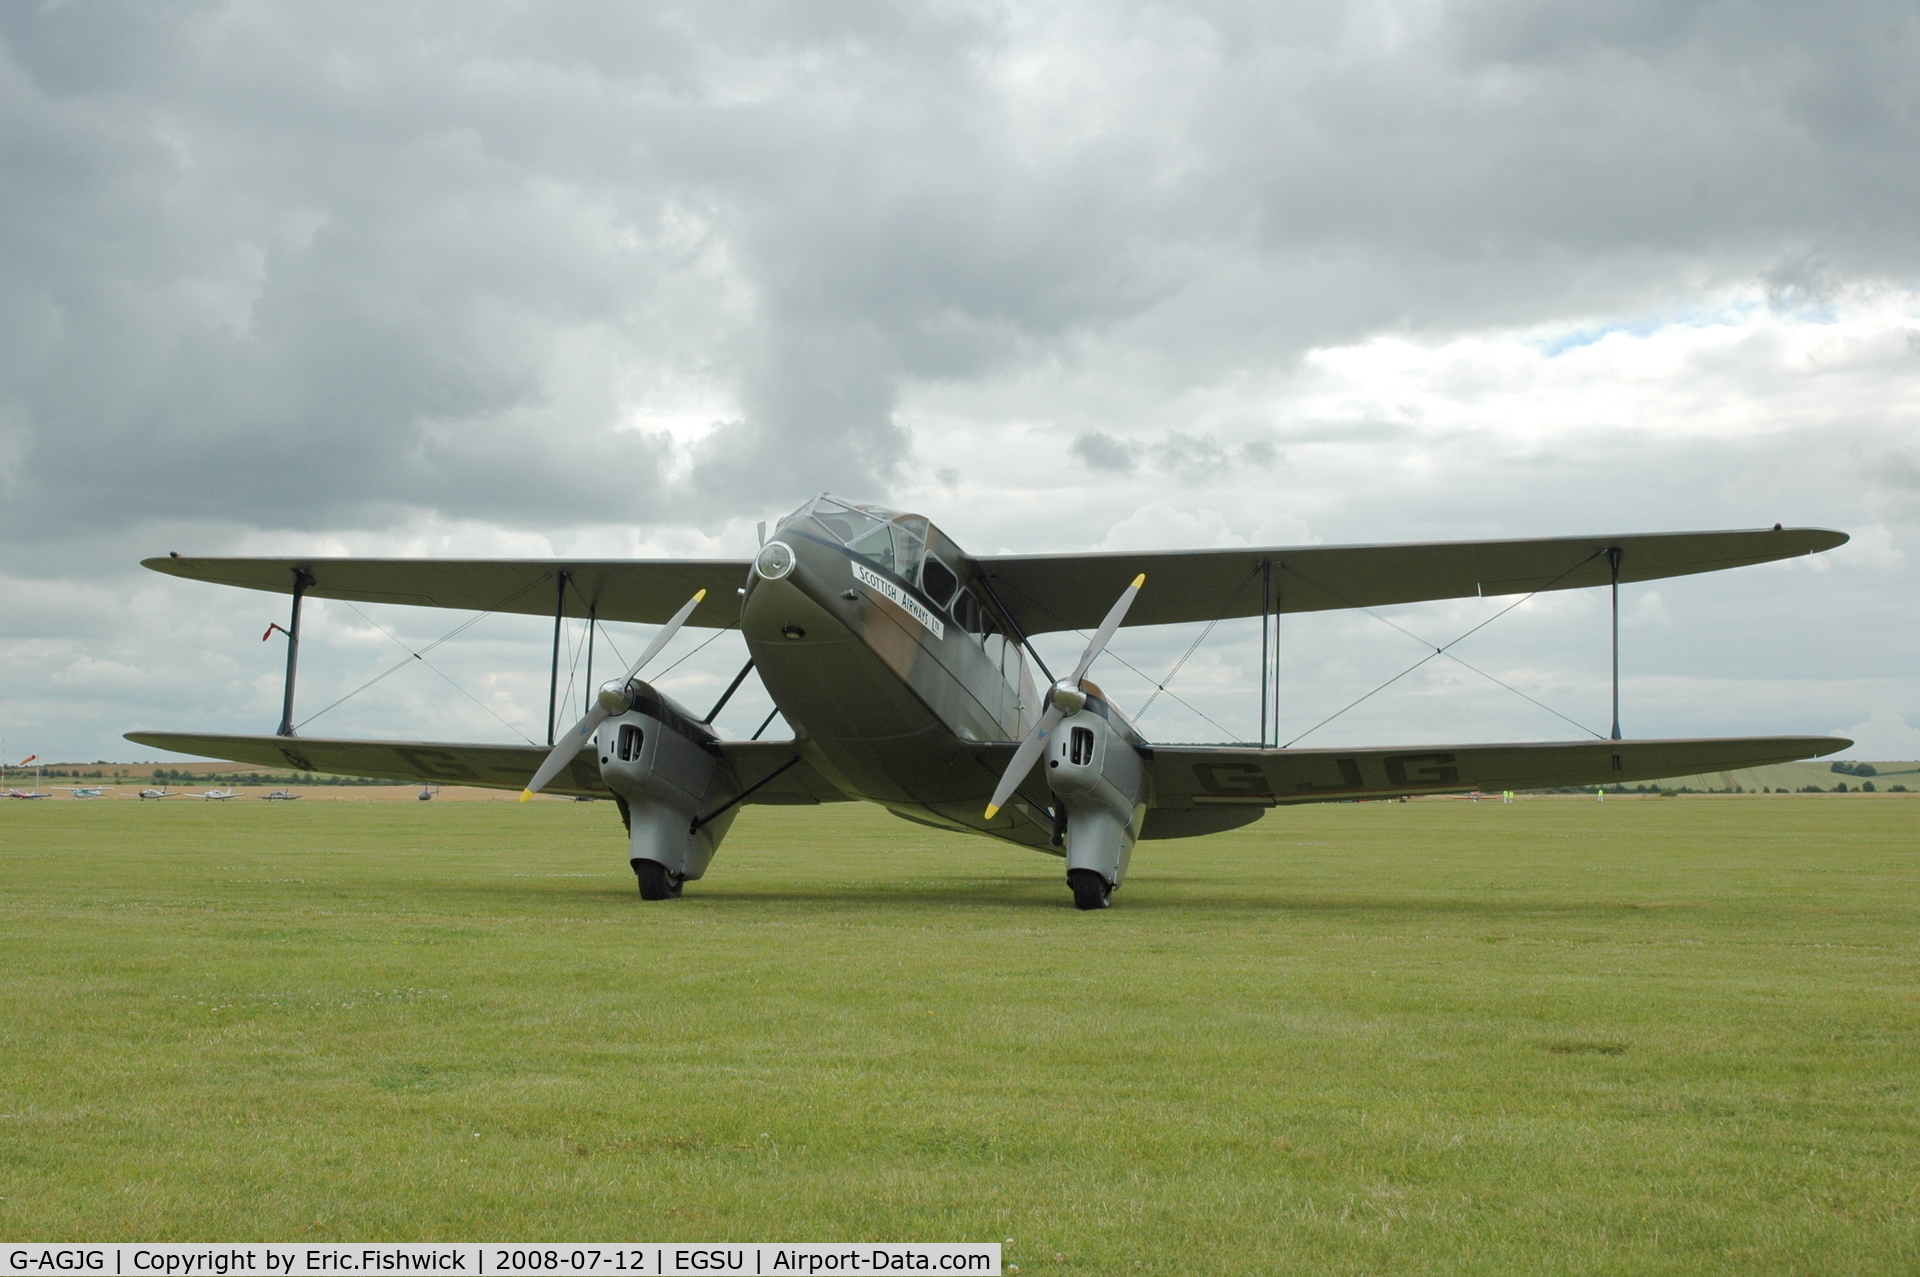 G-AGJG, 1941 De Havilland DH-89A Dominie/Dragon Rapide C/N 6517, 3. X7344 at Duxford